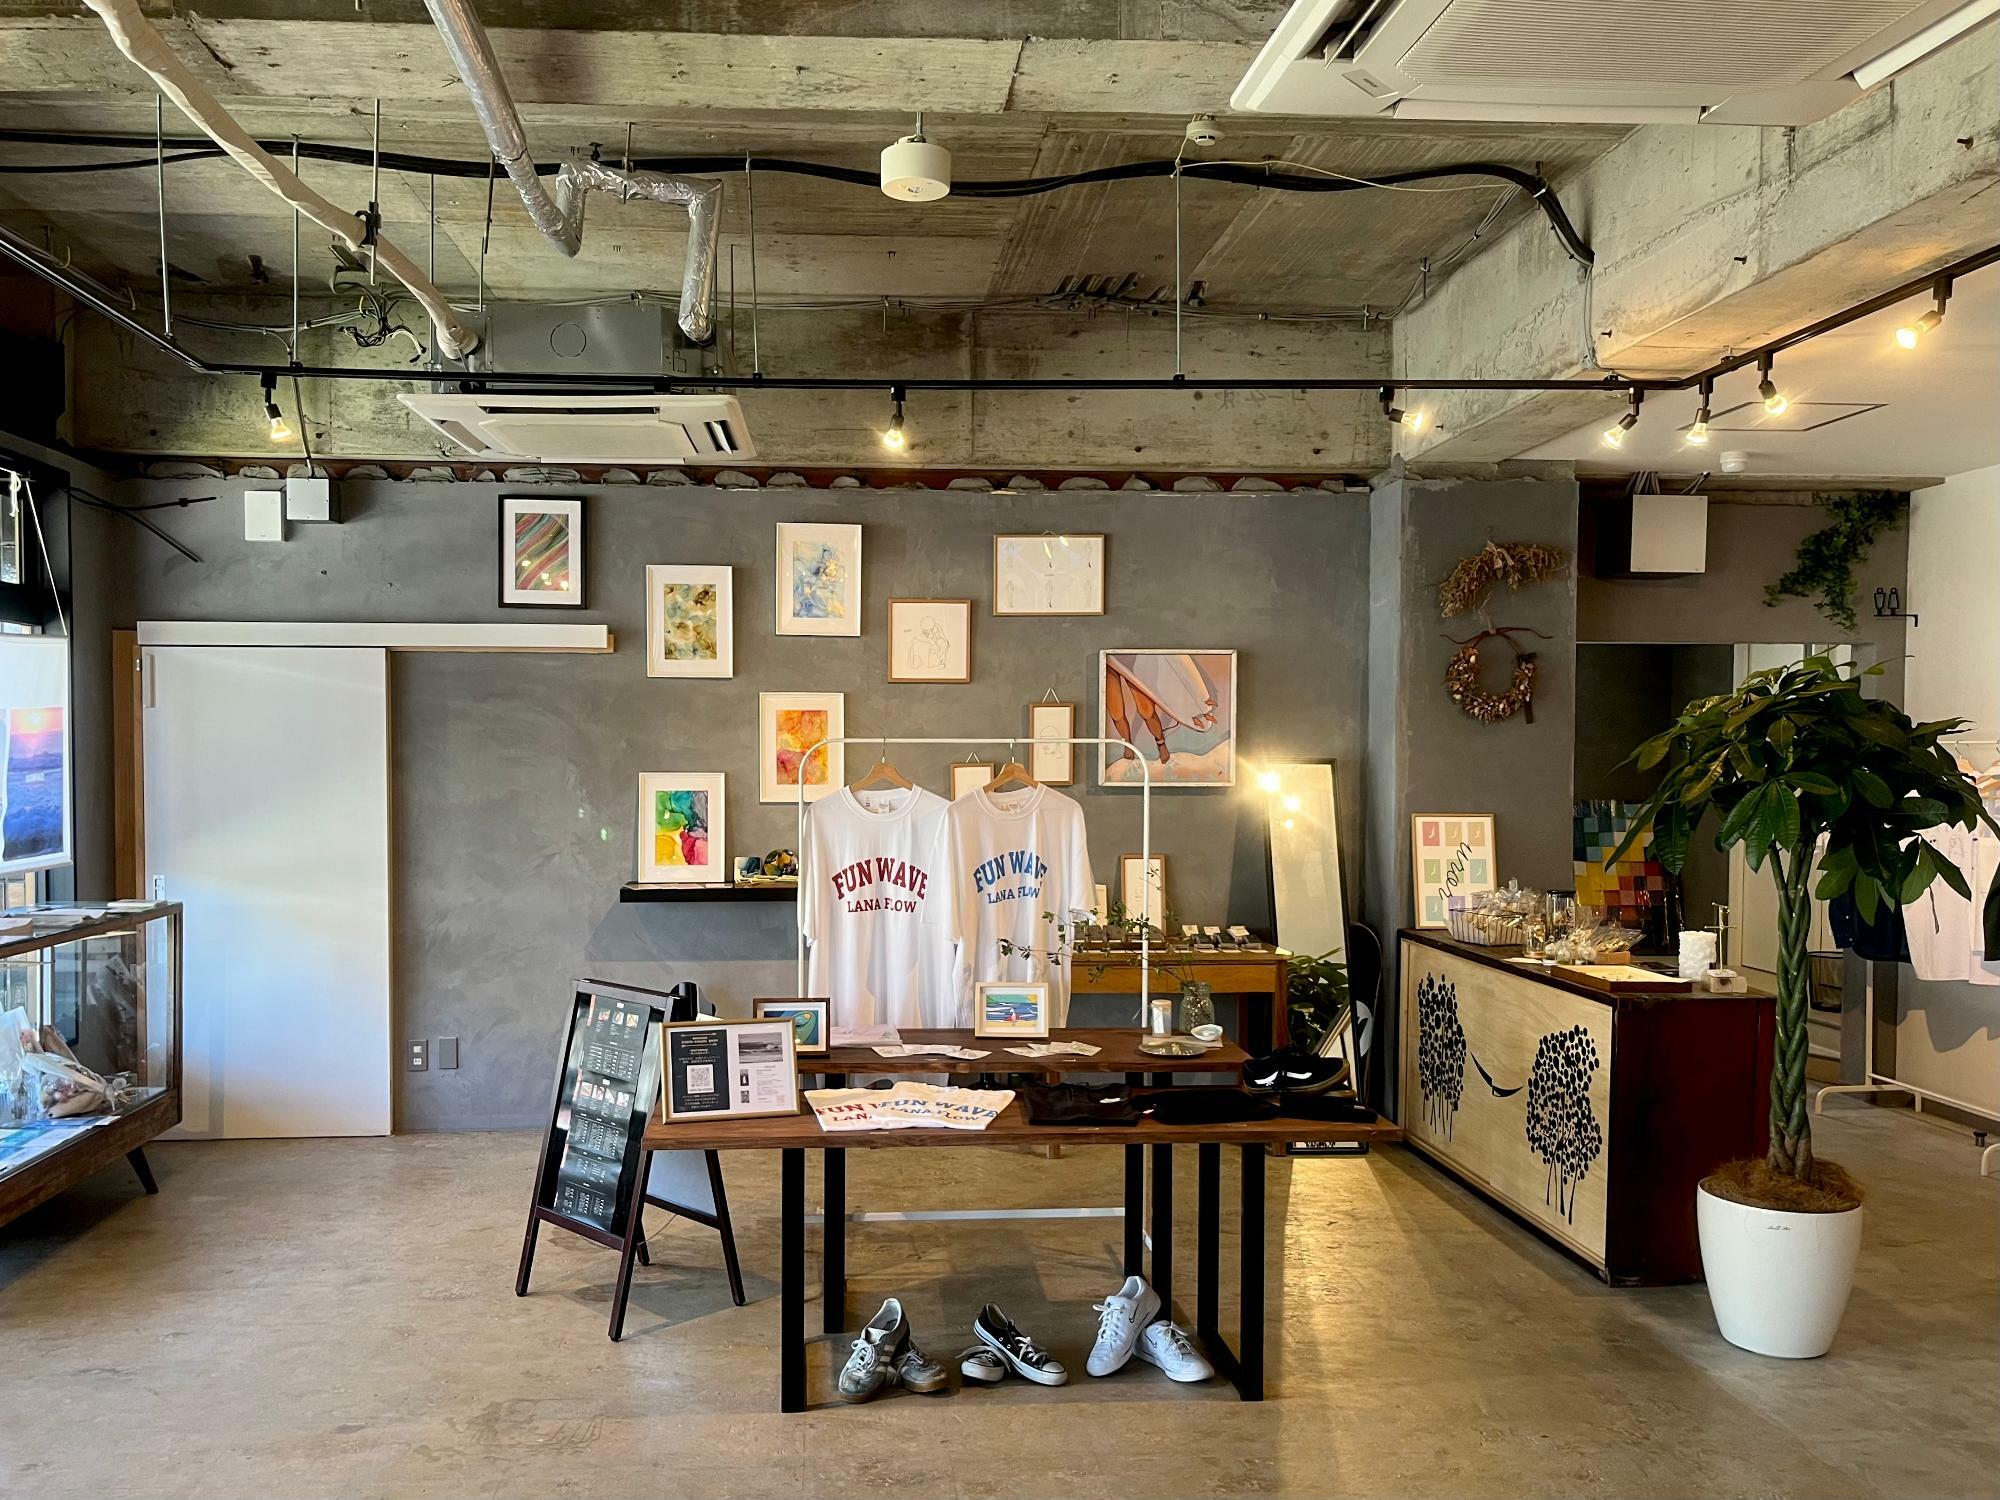 ▲ 店内右側がカフェスペースで、左側はアート作品の展示やショップスペースになっている